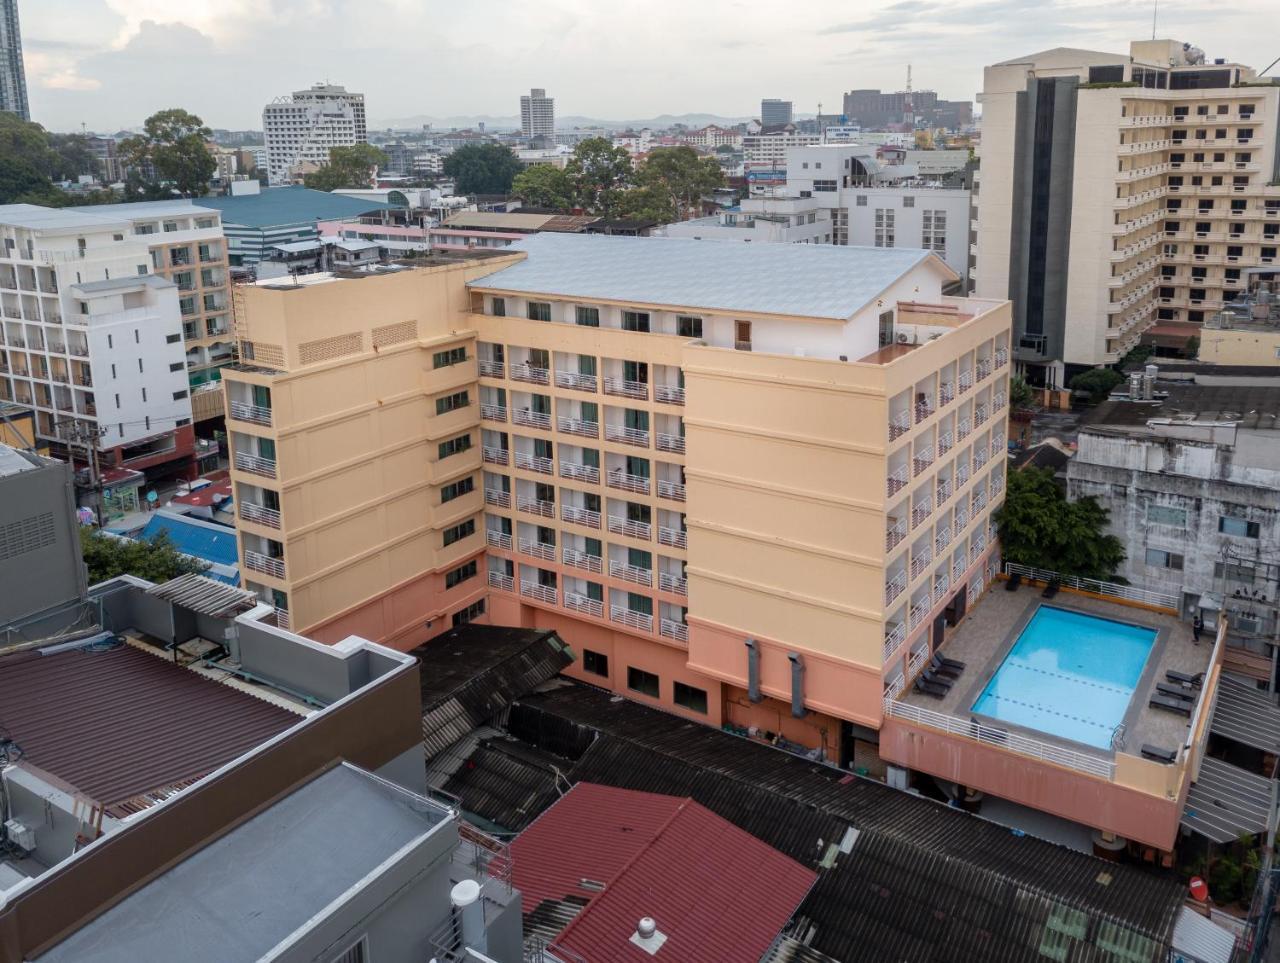 Eastiny Plaza Hotel Pattaya Exterior photo